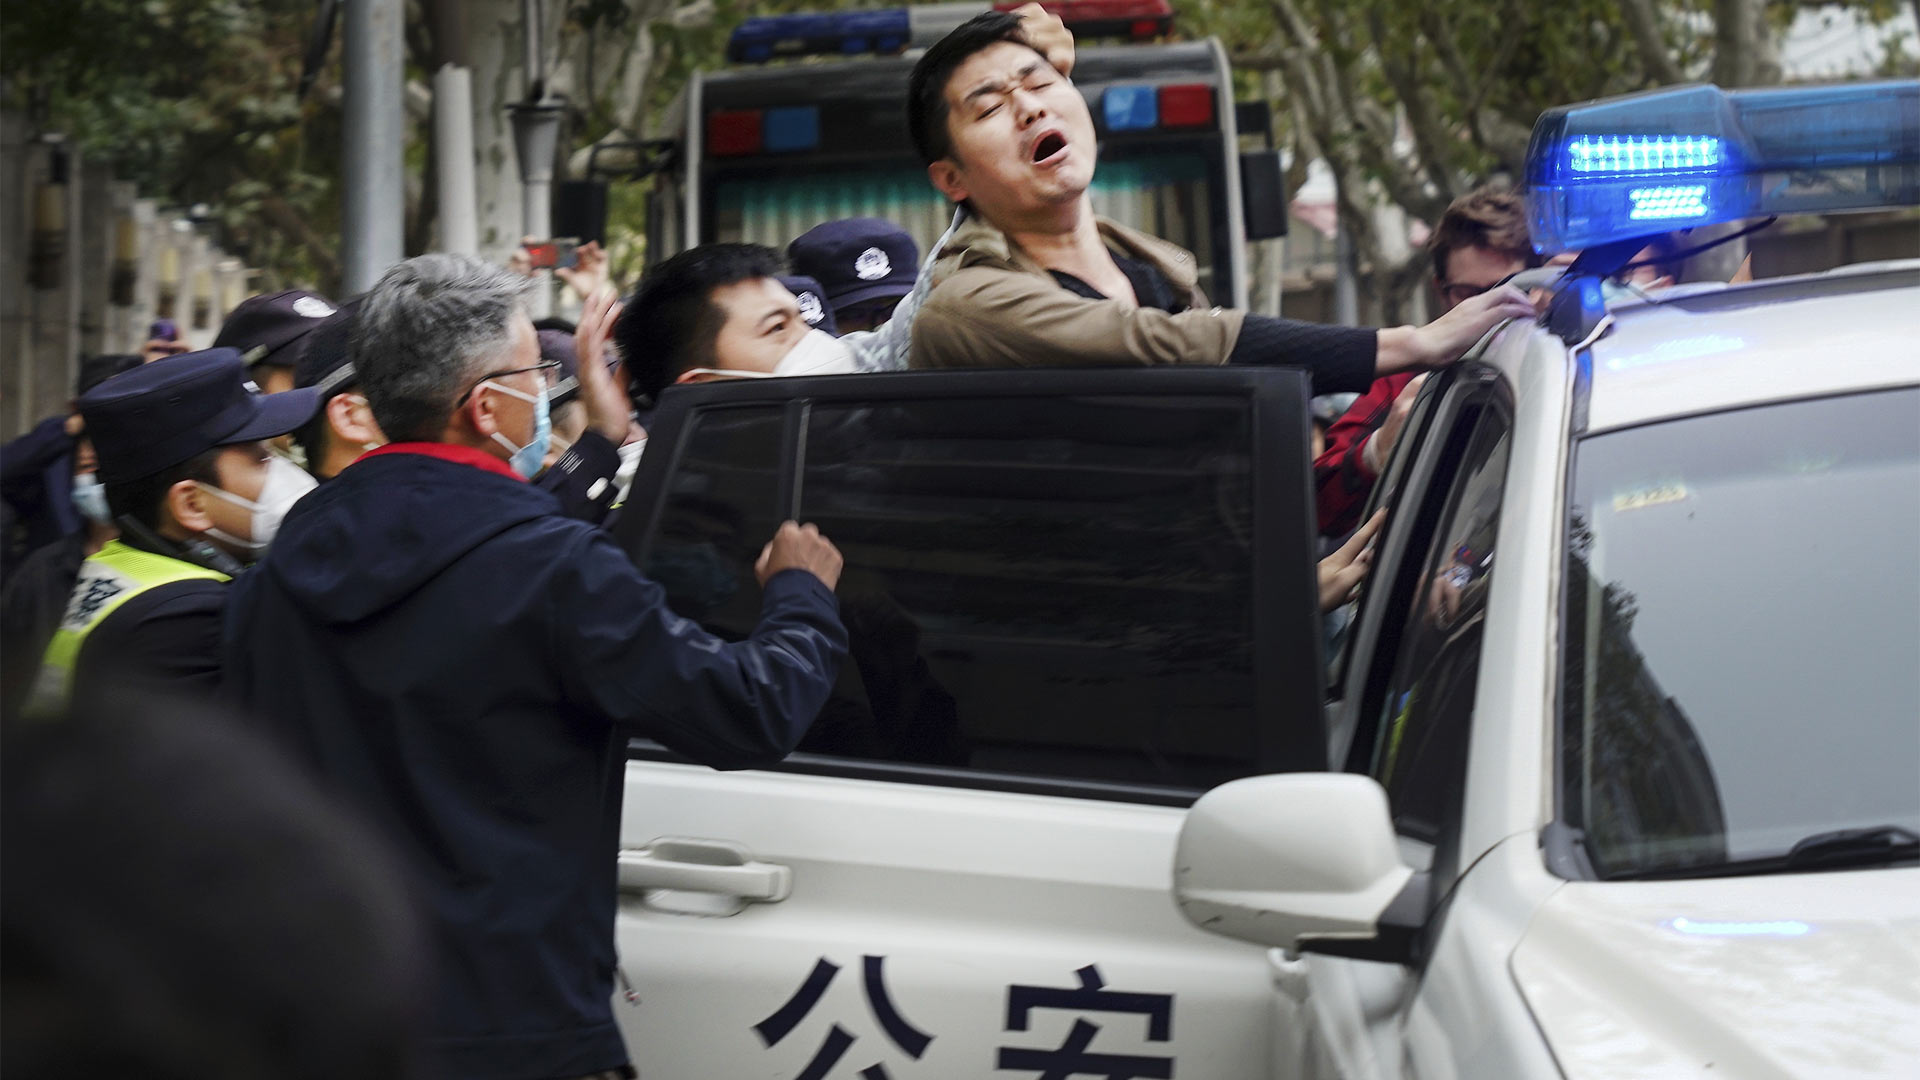 Ein Demonstrant wird bei Protesten gegen die rigorosen Null-Covid-Maßnahmen in China von Polizisten festgenommen (27.11.22). | picture alliance/dpa/Anonymous/A